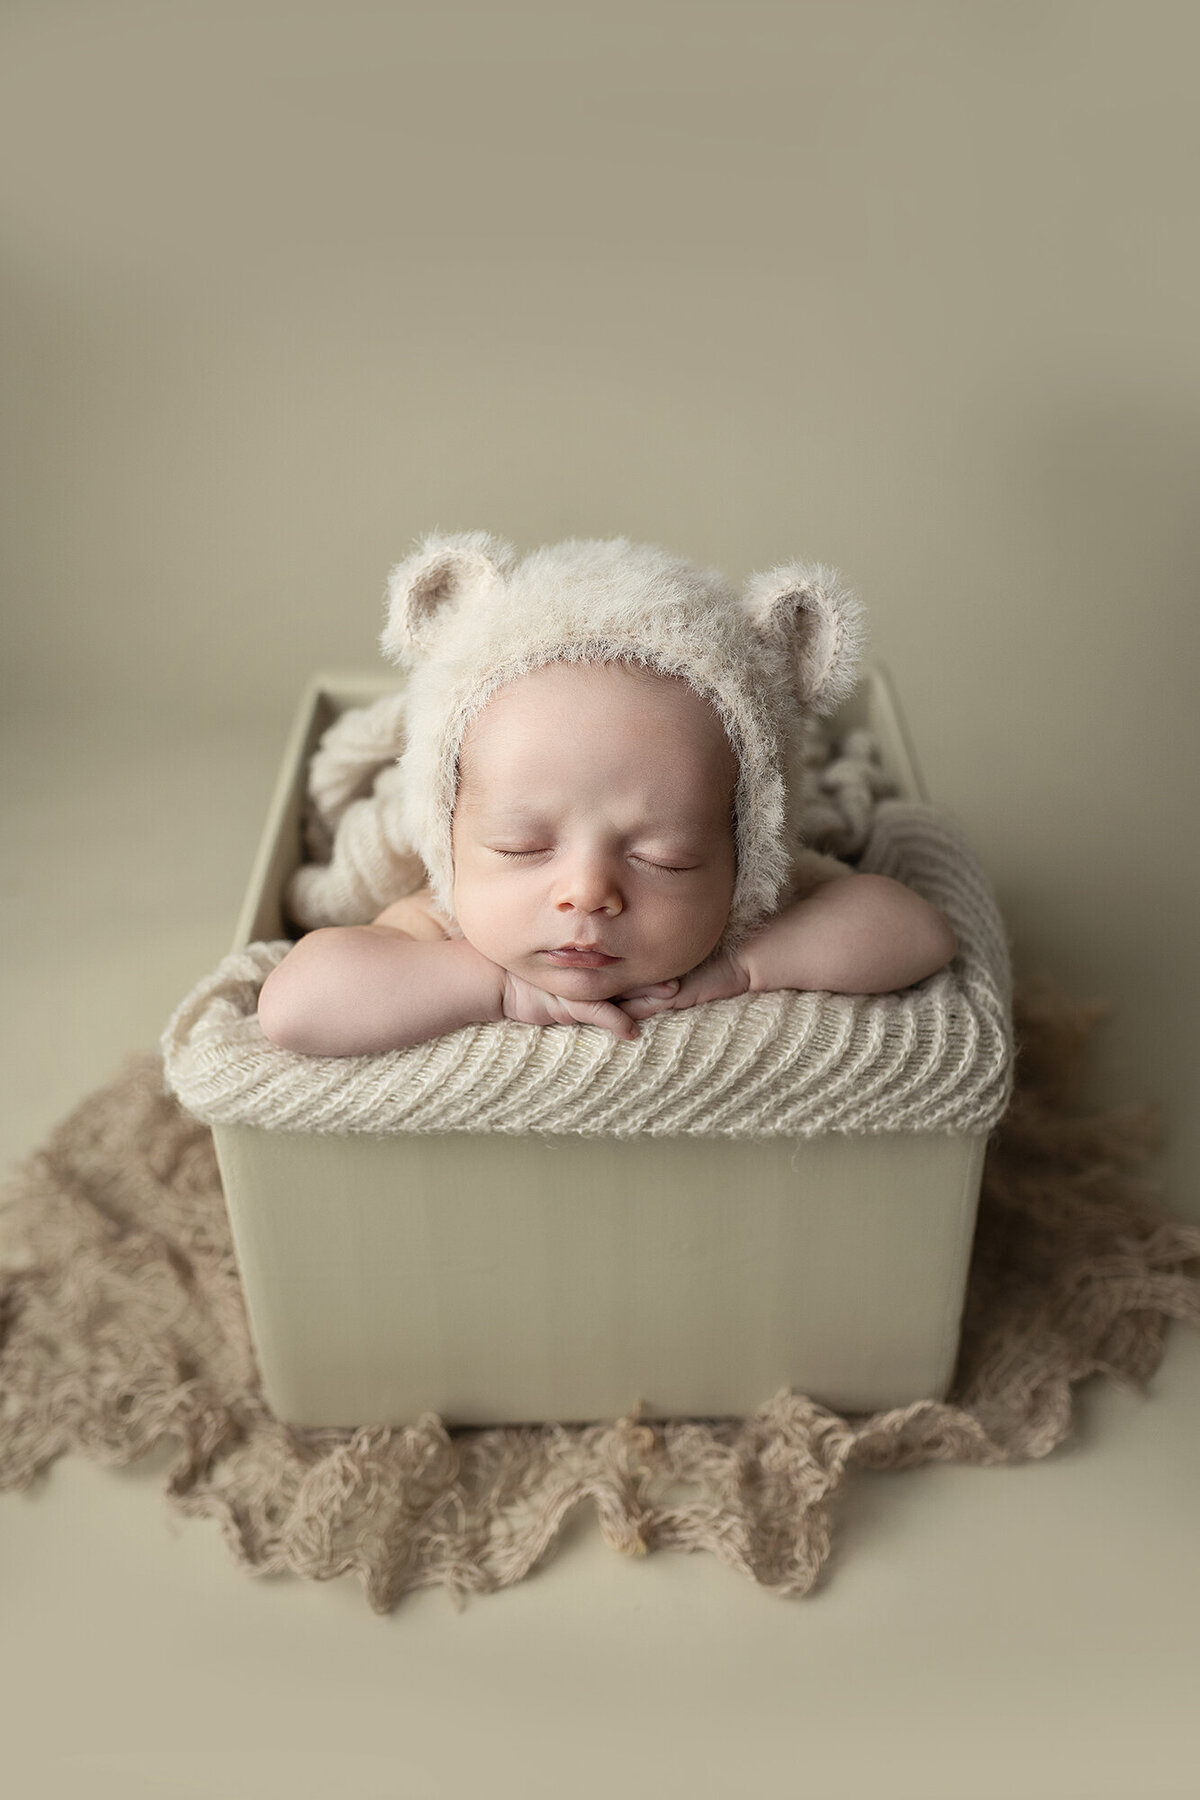 Baby boy posed in box wearing a bear bonnet.